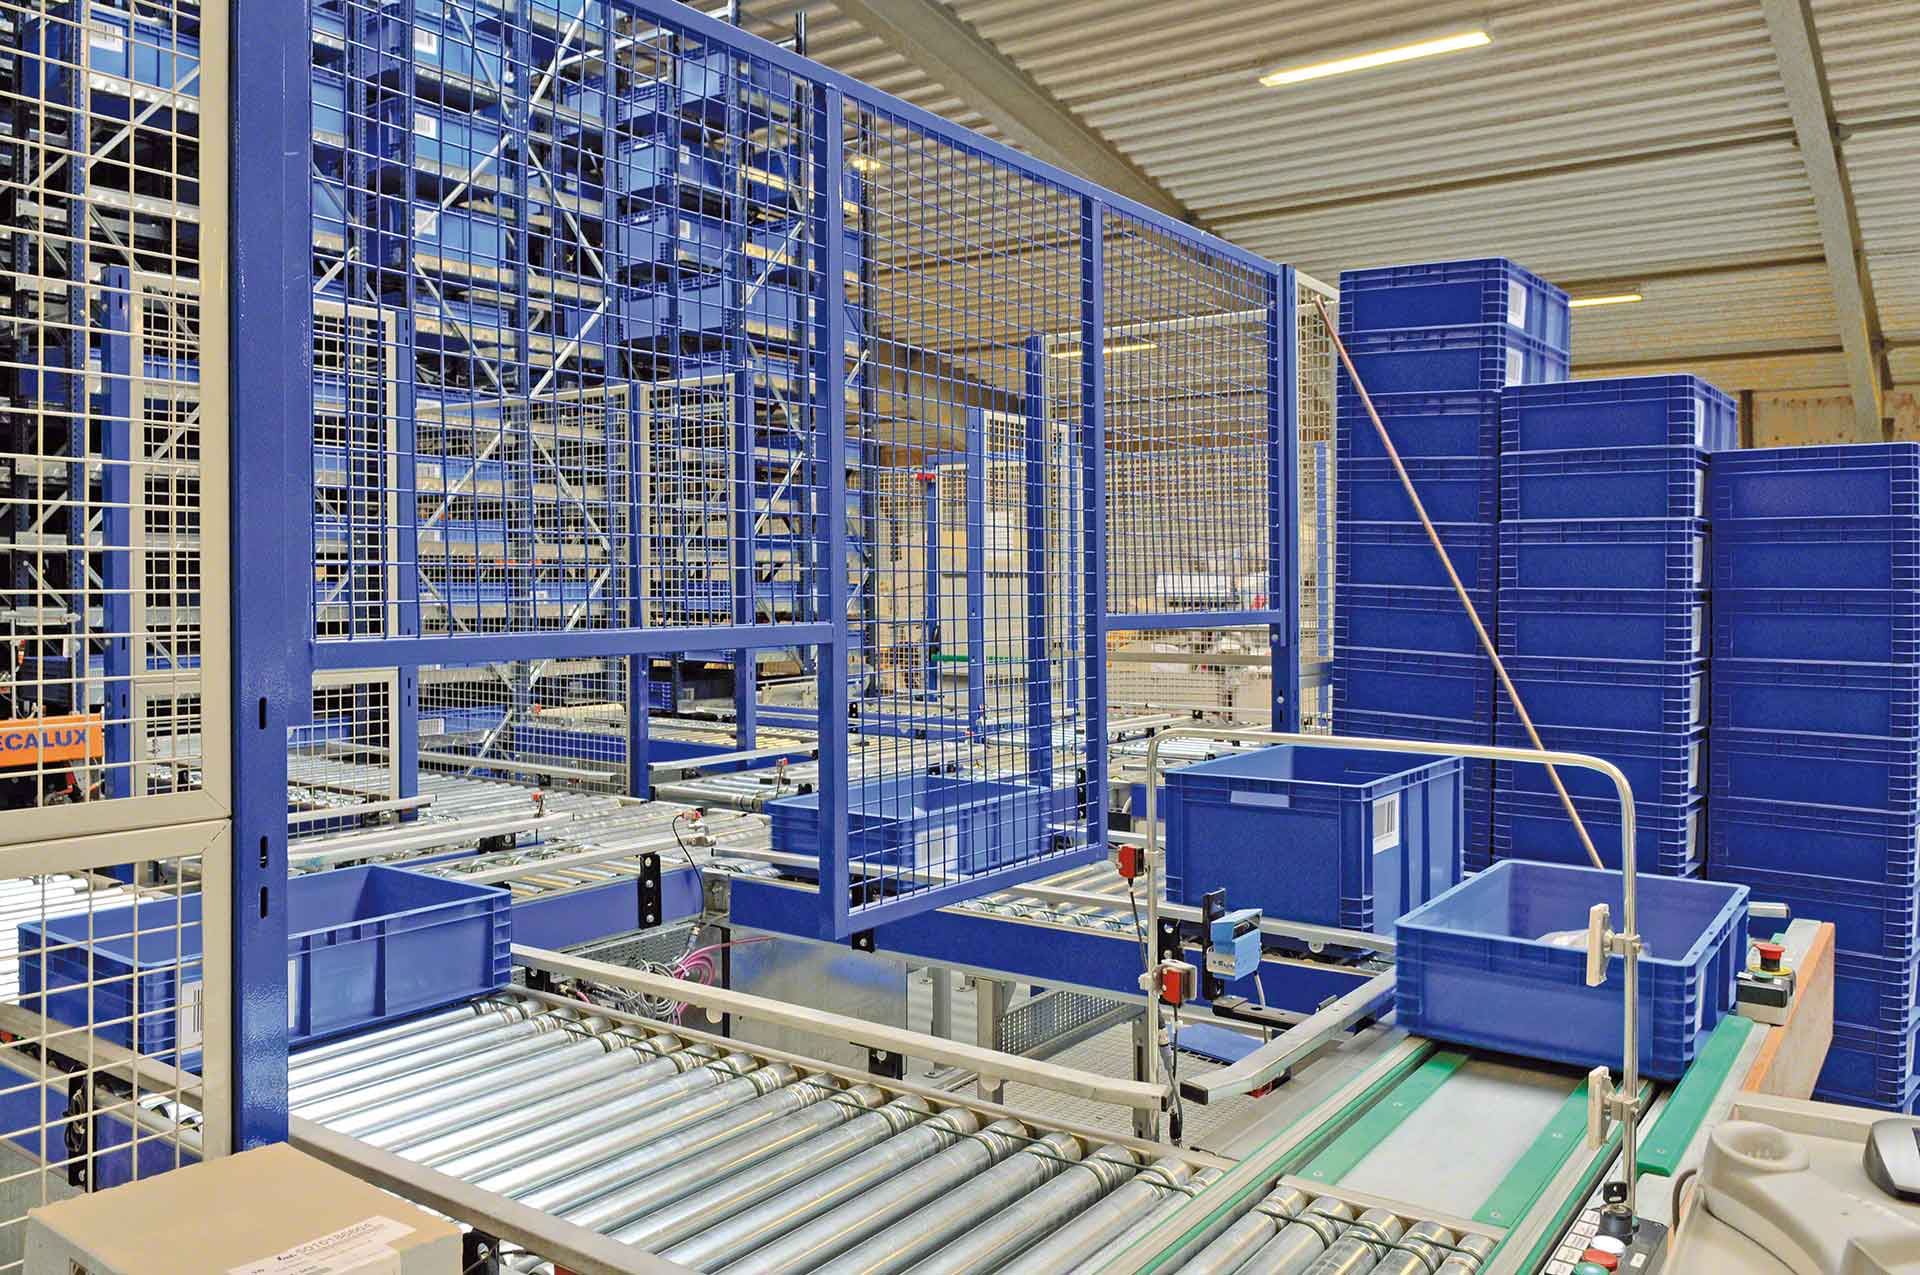 Het verplaatsen van goederen in het magazijn kan worden geoptimaliseerd met de toepassing van logistieke kunstmatige intelligentie